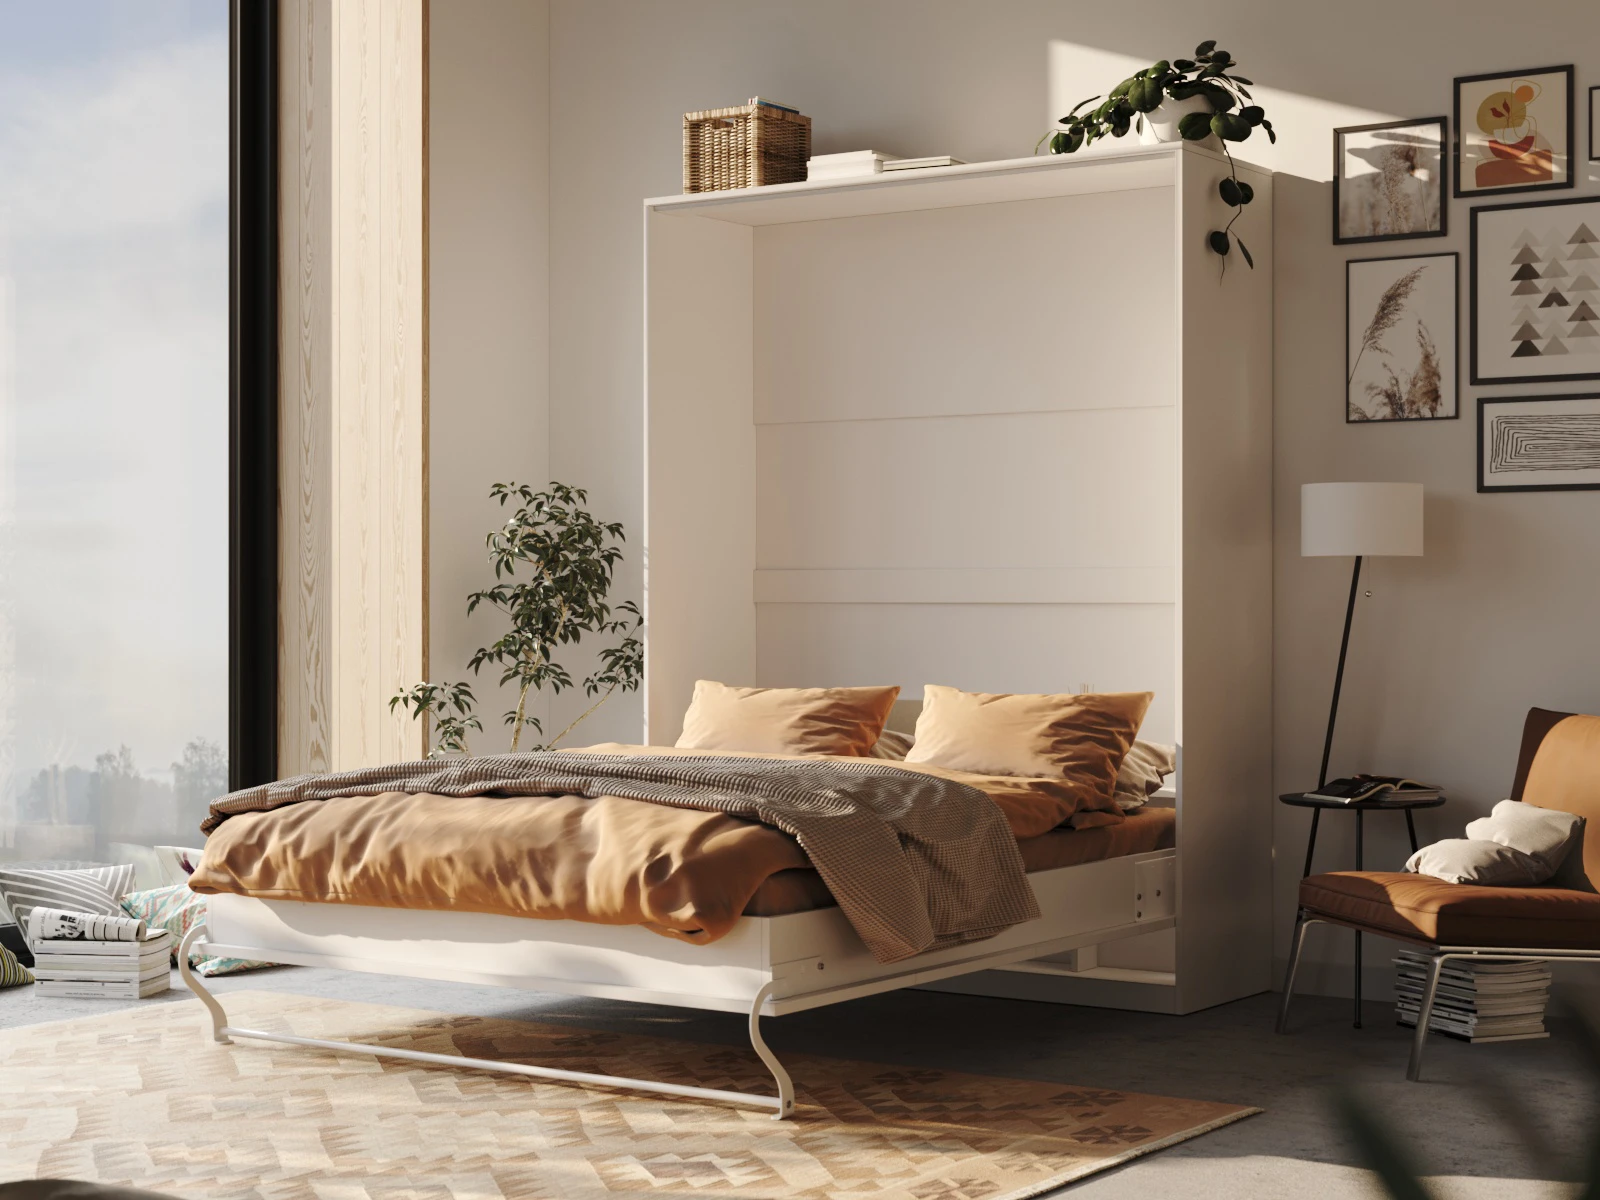 1 Łóżko w szafie 160x200 Pionowe (Standard 55 cm głębokość) Biały